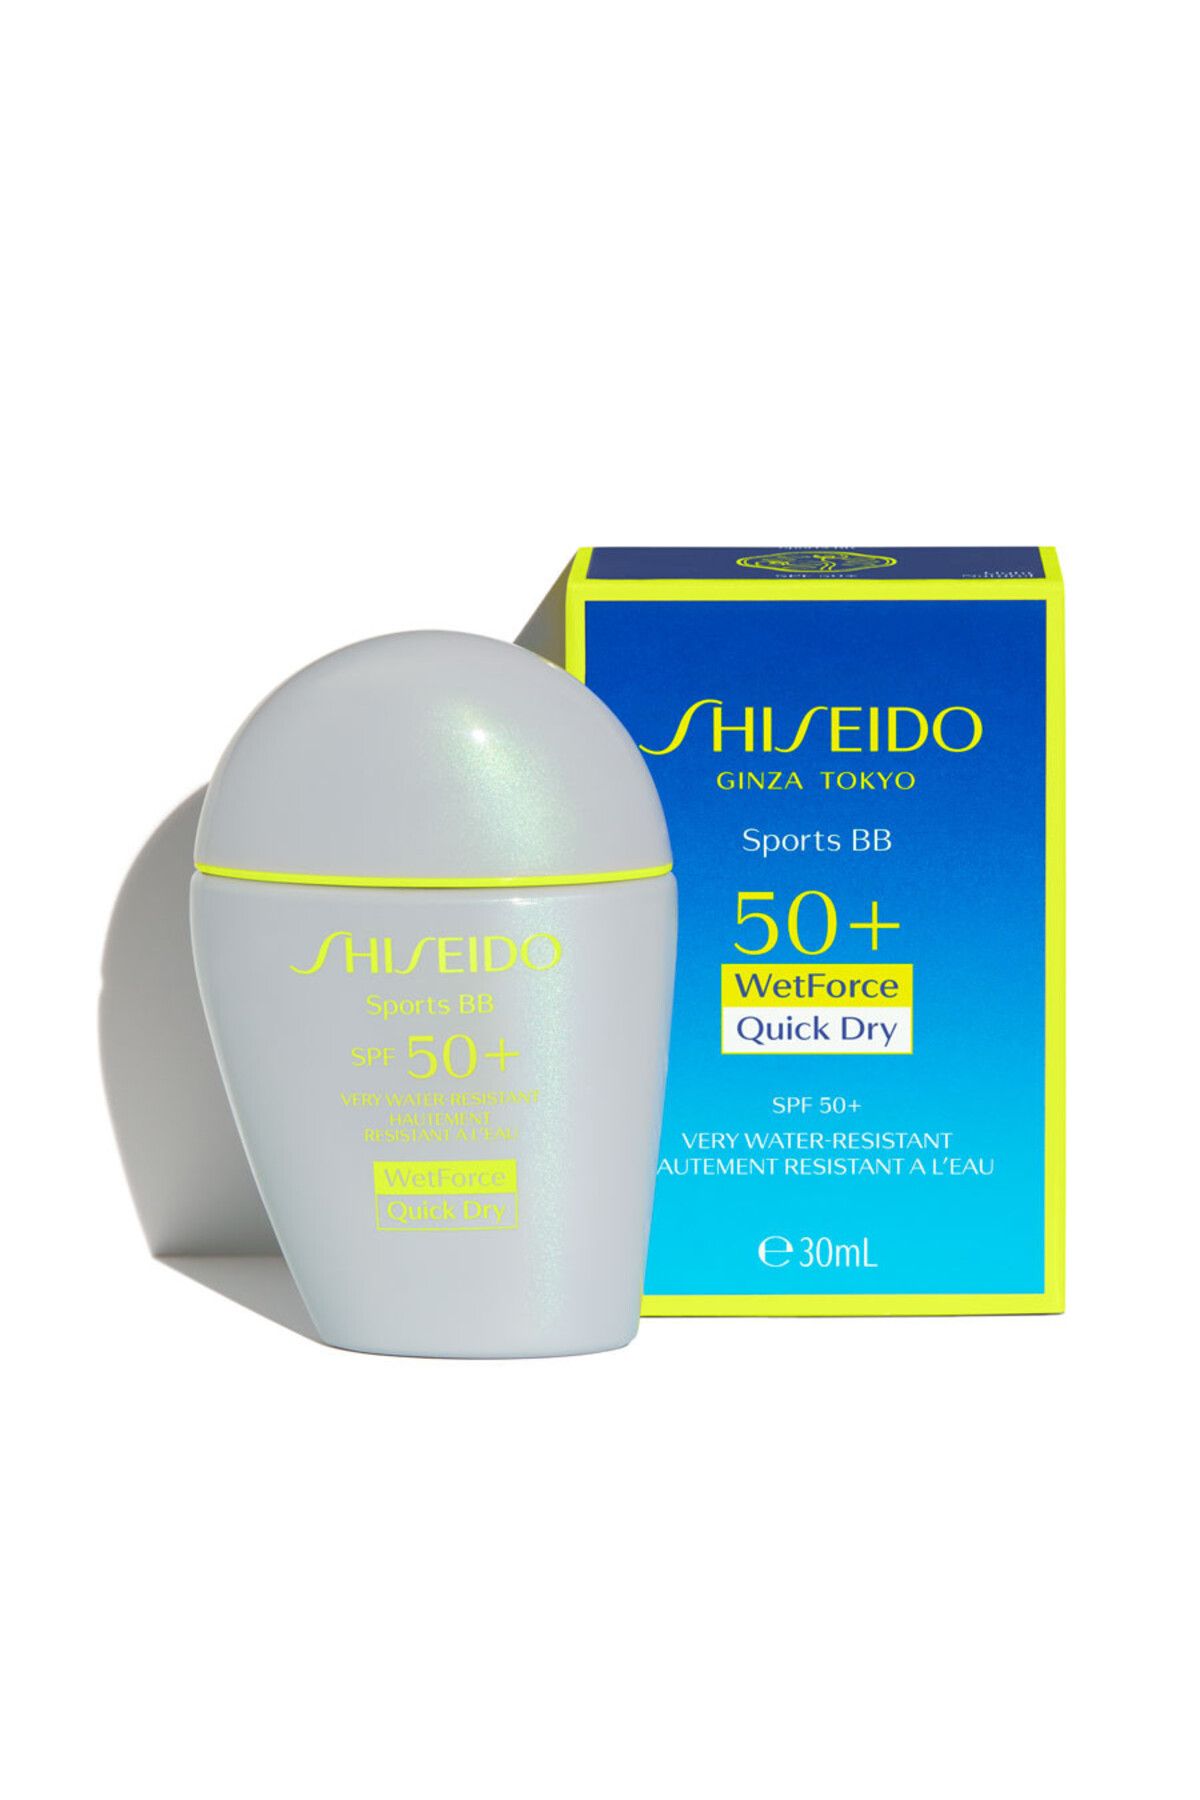 Shiseido Sporculara Özel Suncare Sports BB Spf50+ Medium Güneş Koruyucu